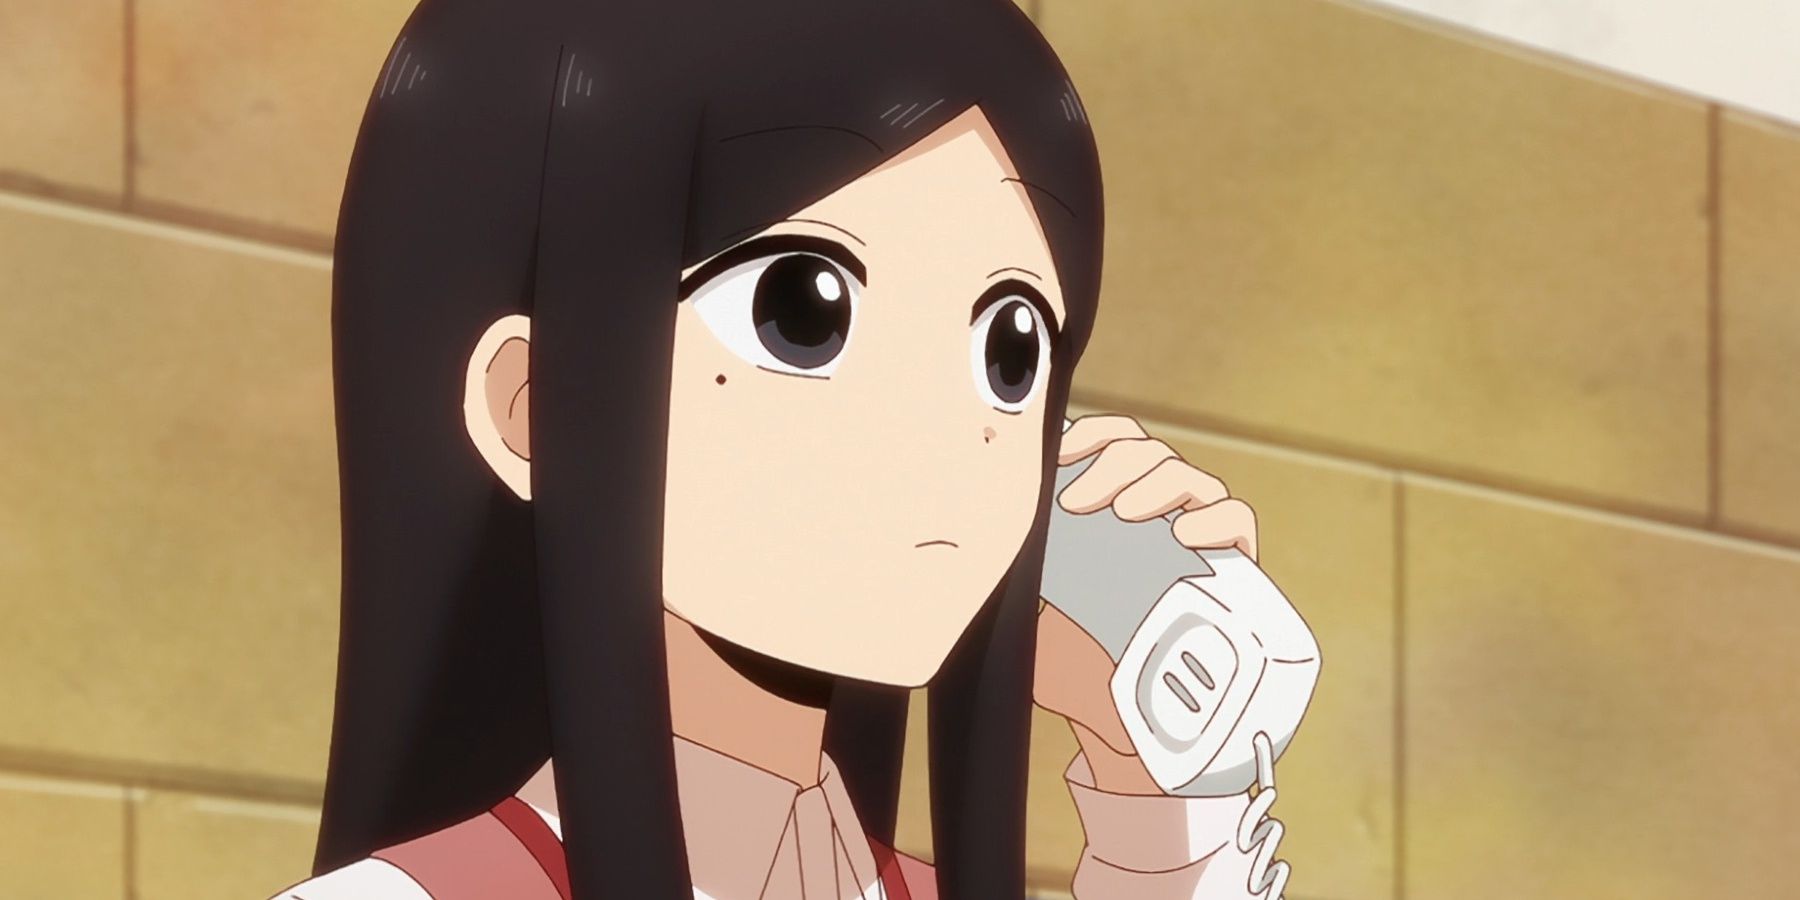 sakurai on the phone